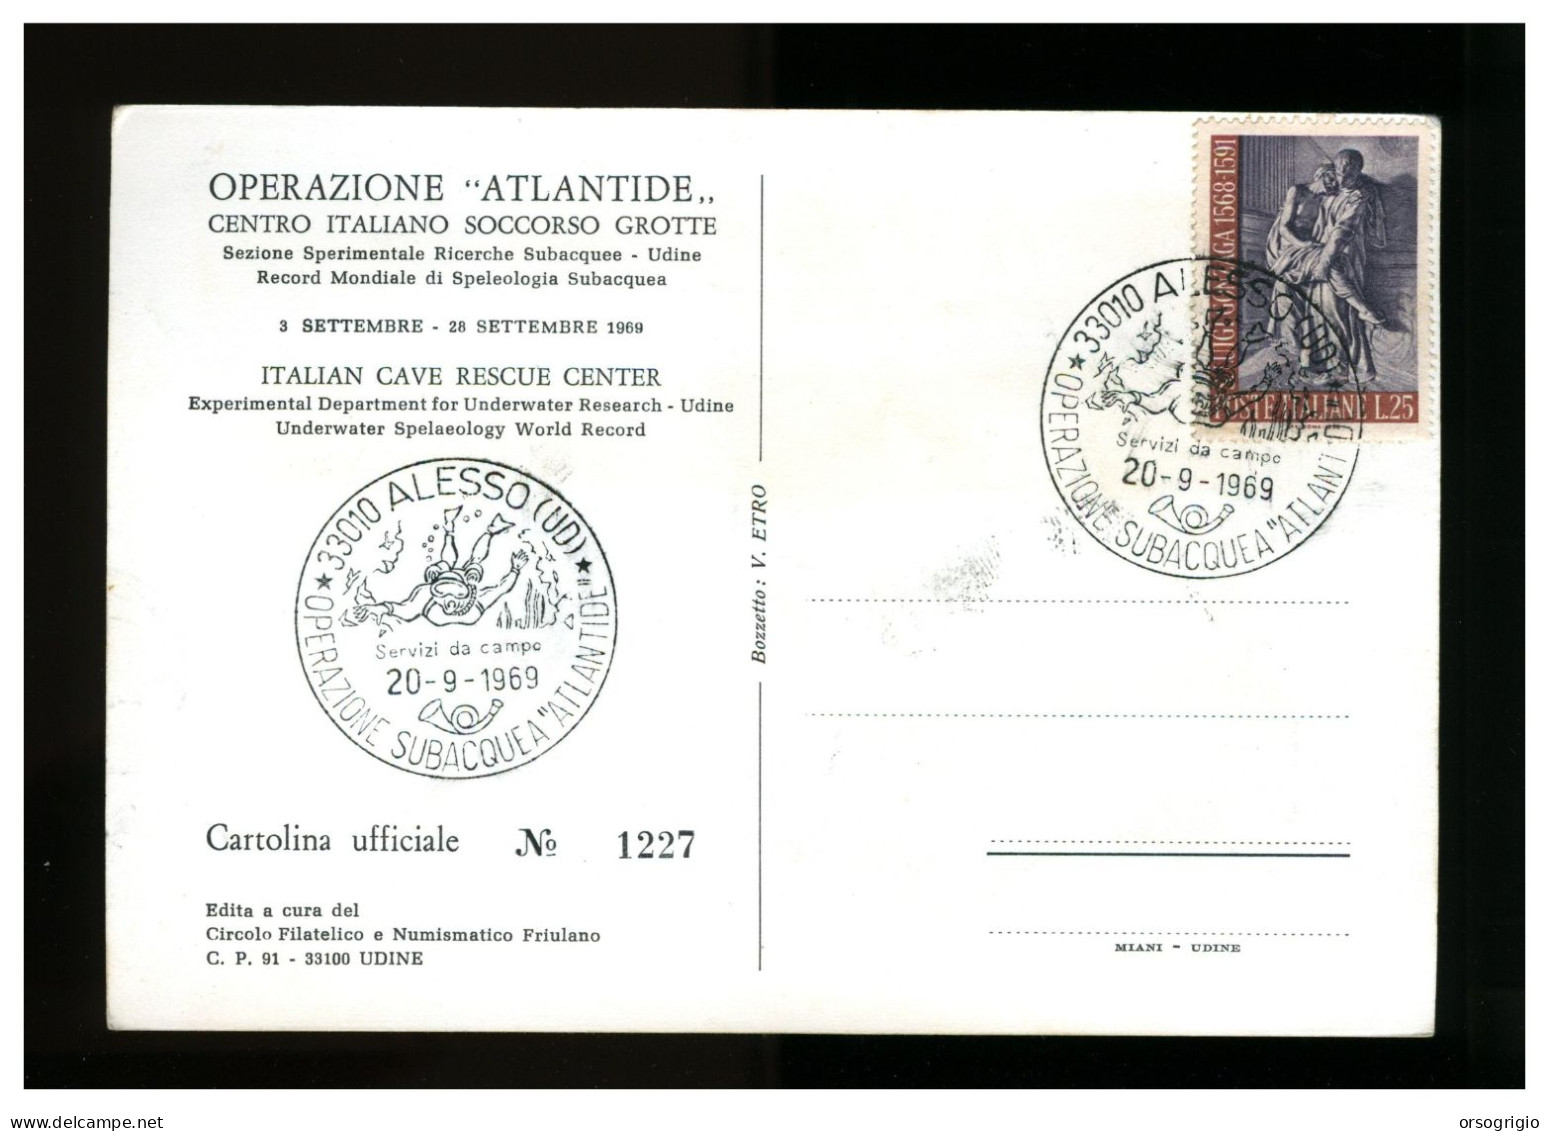 ITALIA - OPERAZIONE ATLANTIDE 1969 - CAVE RESCUE - ALESSO - Città Subacquea - Duiken